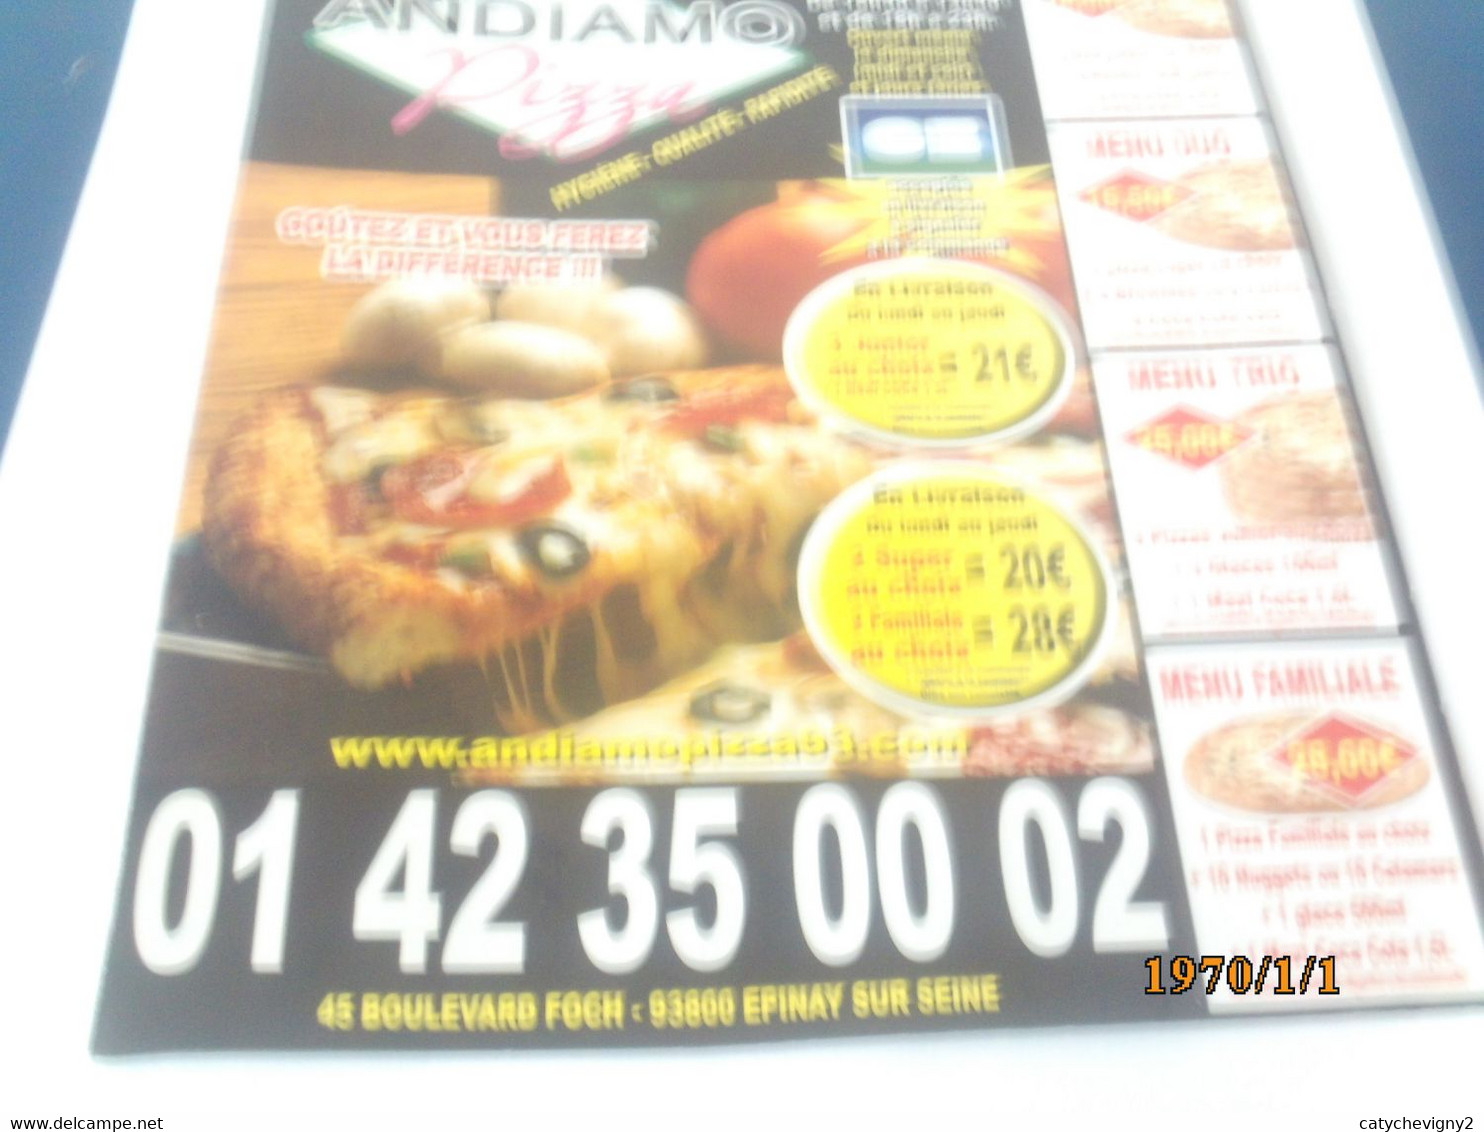 LOT DE 10 DEPLIANTS DE PIZZAS   QUI FAIT LA MEILLEURE PIZZA - Posters